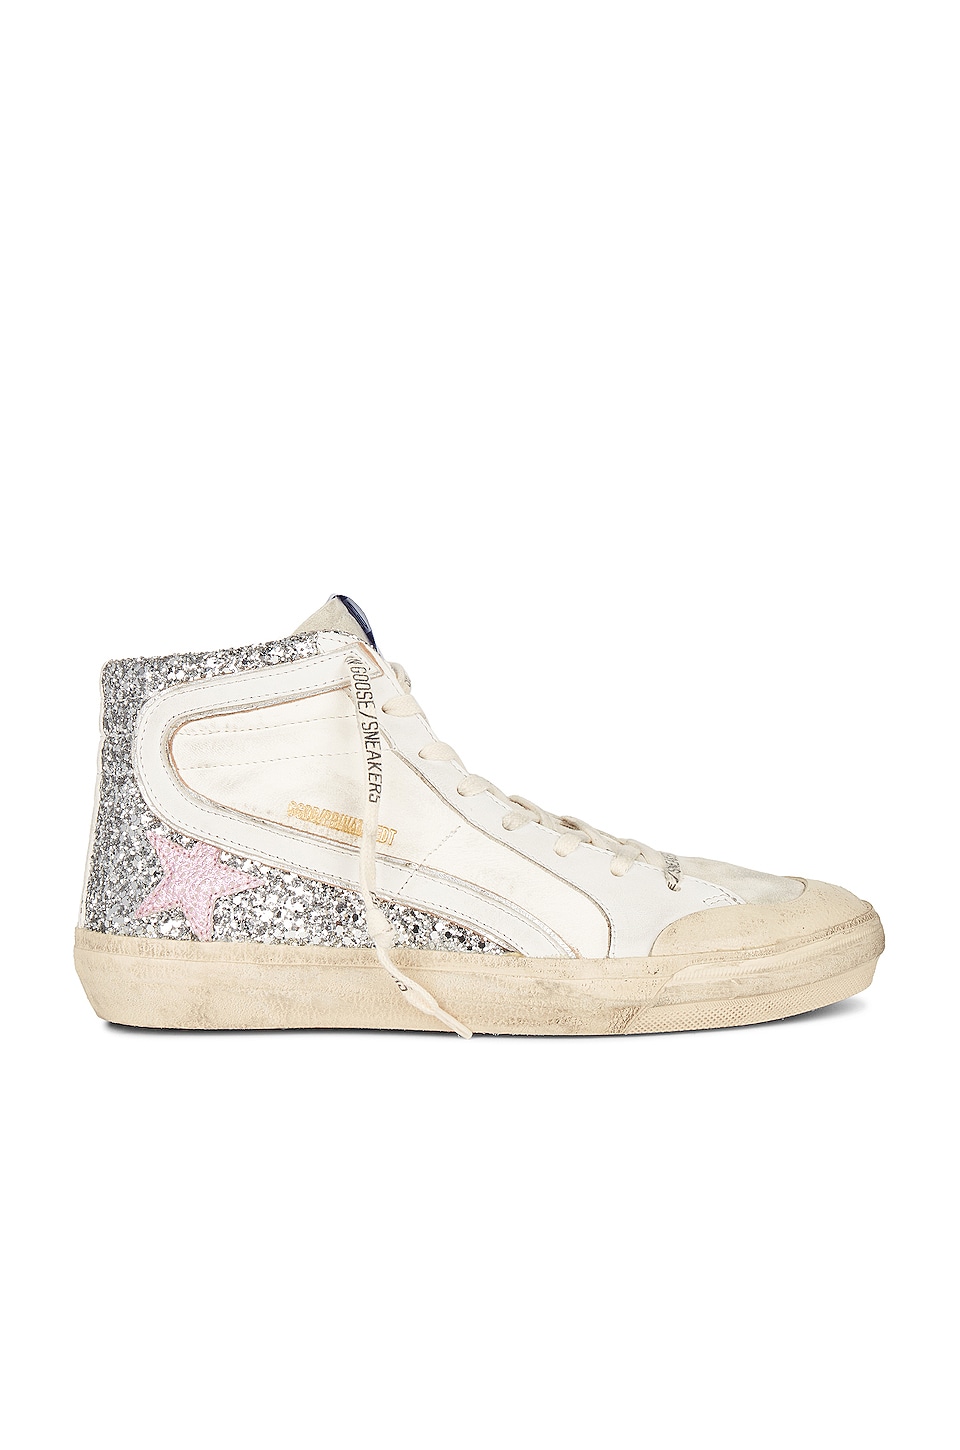 Golden Goose x REVOLVE Slide Sneaker in Pink & White | REVOLVE